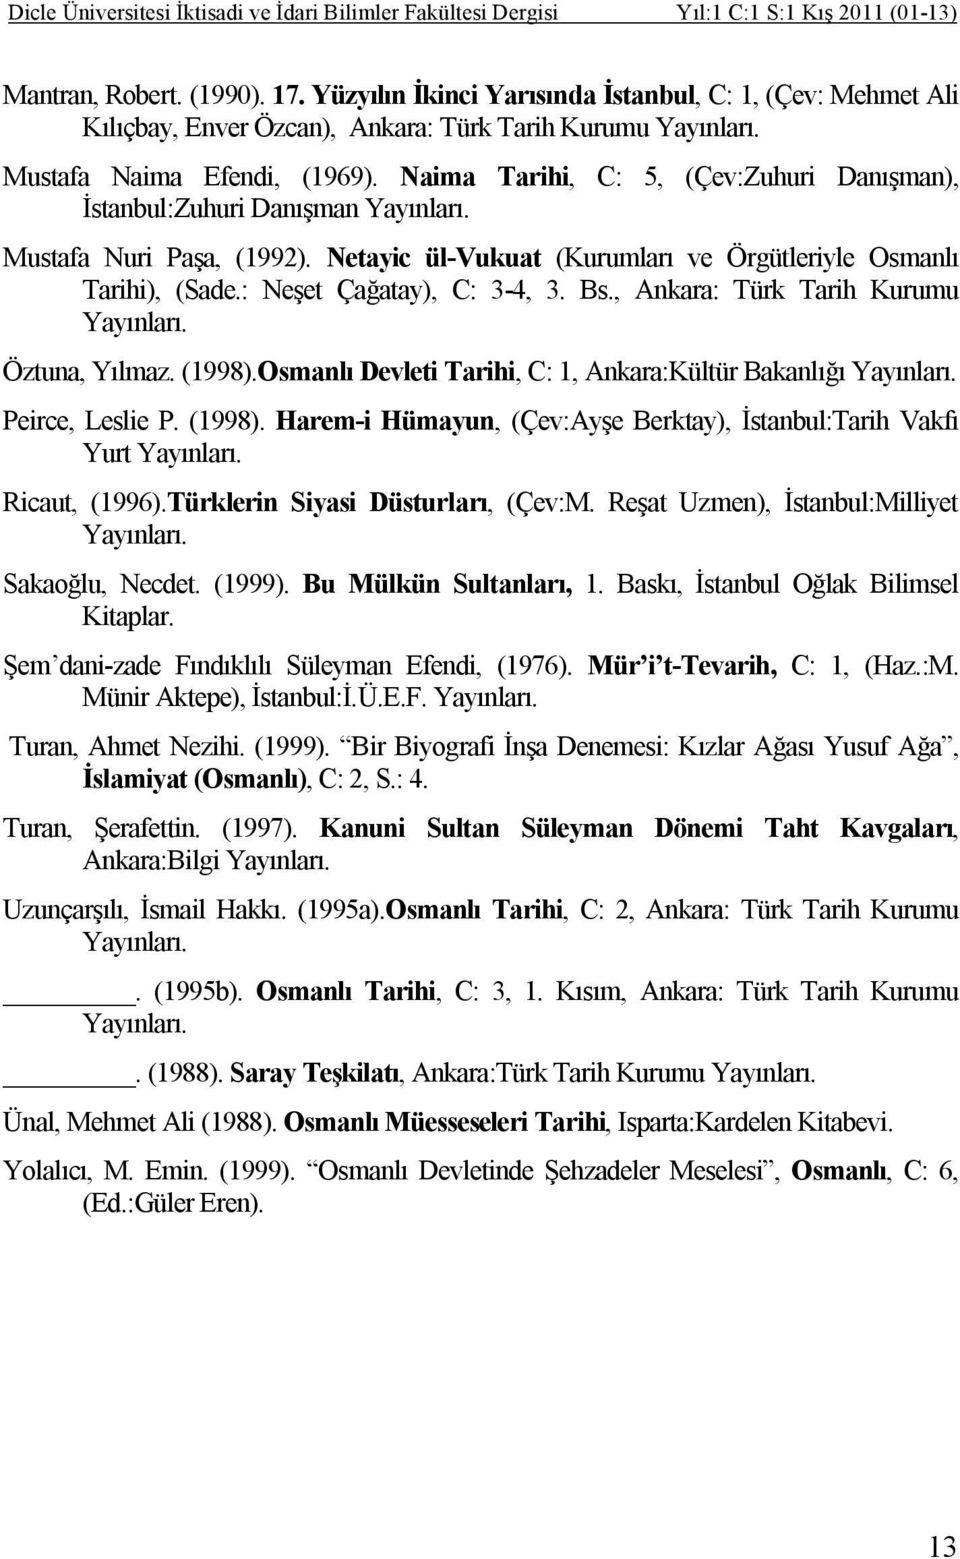 Naima Tarihi, C: 5, (Çev:Zuhuri Danışman), İstanbul:Zuhuri Danışman Yayınları. Mustafa Nuri Paşa, (1992). Netayic ül-vukuat (Kurumları ve Örgütleriyle Osmanlı Tarihi), (Sade.